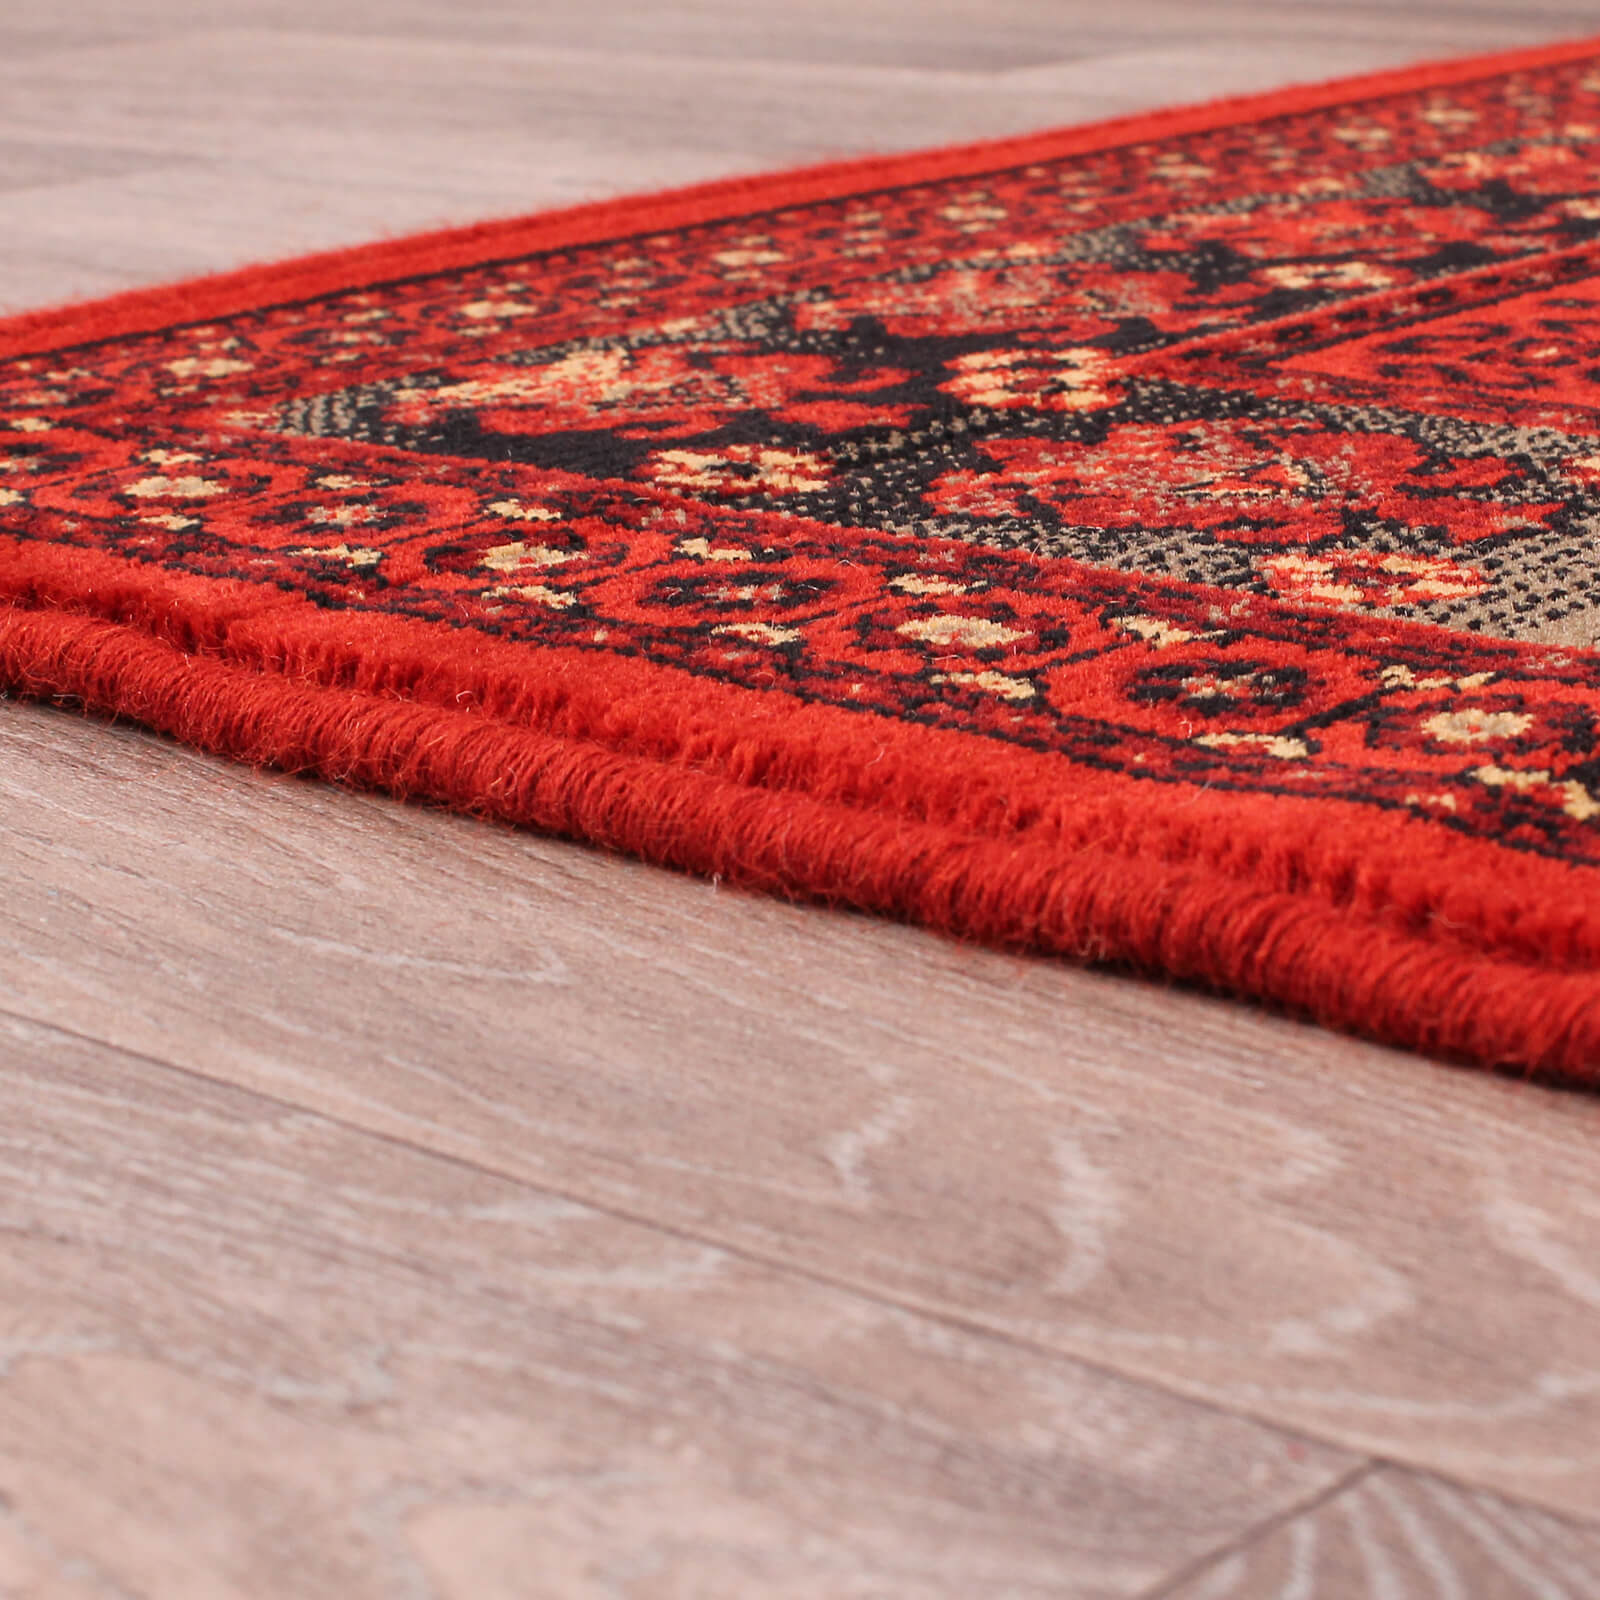 Handmade Carpets Keshan Heritage Shirvan Red Rug